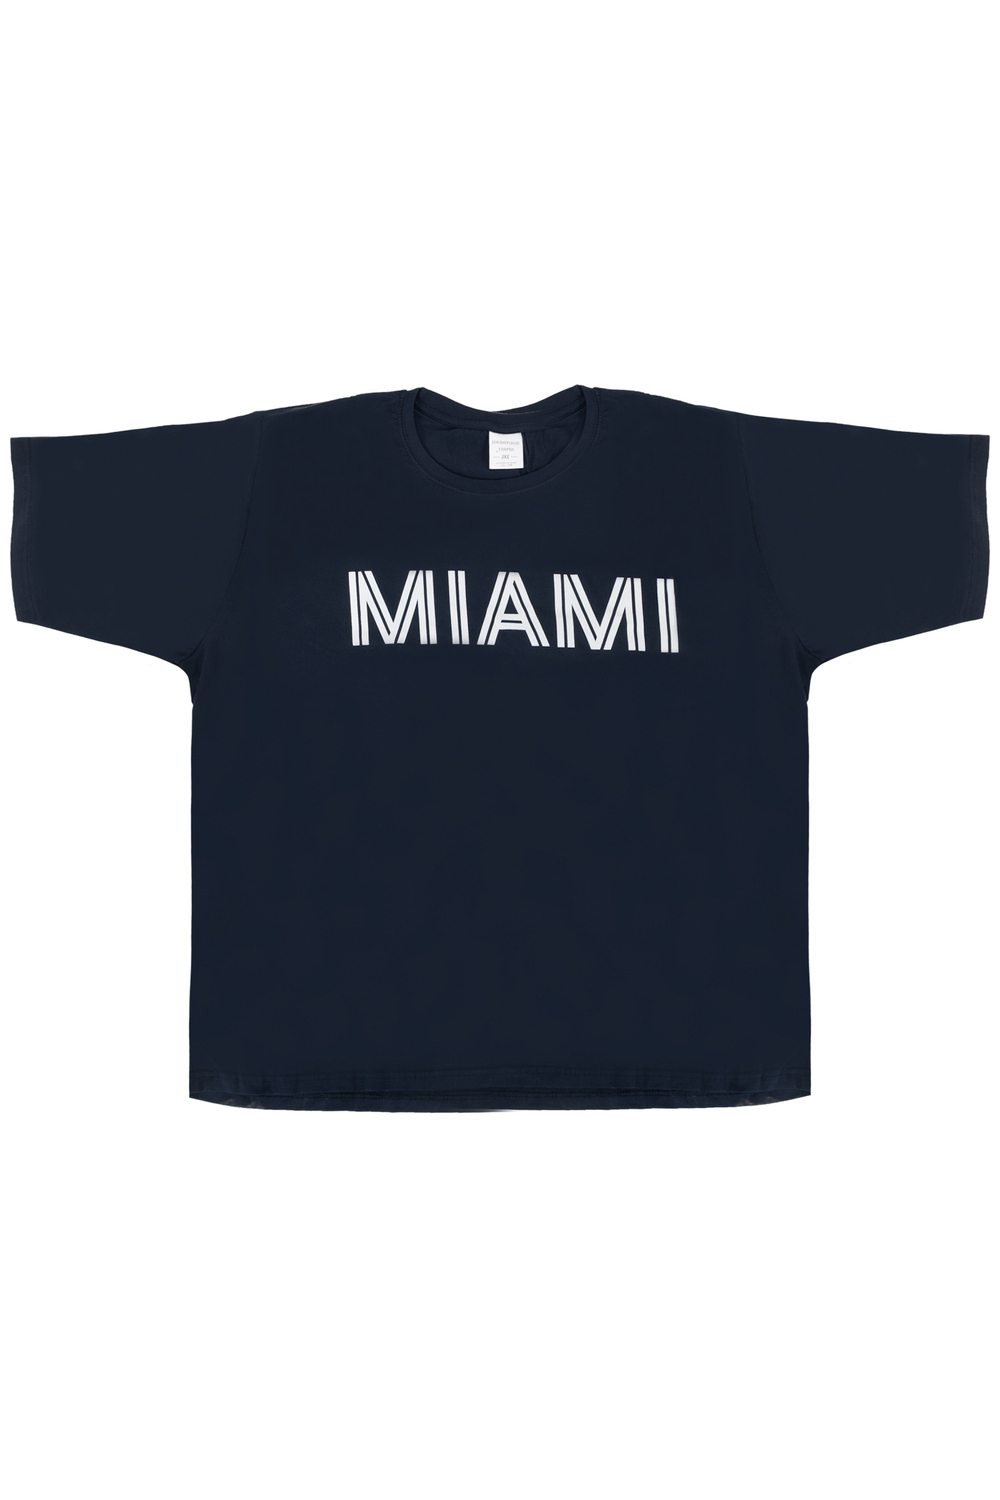 Miami, crewneck cotton t-shirt - Navy - Plus Size